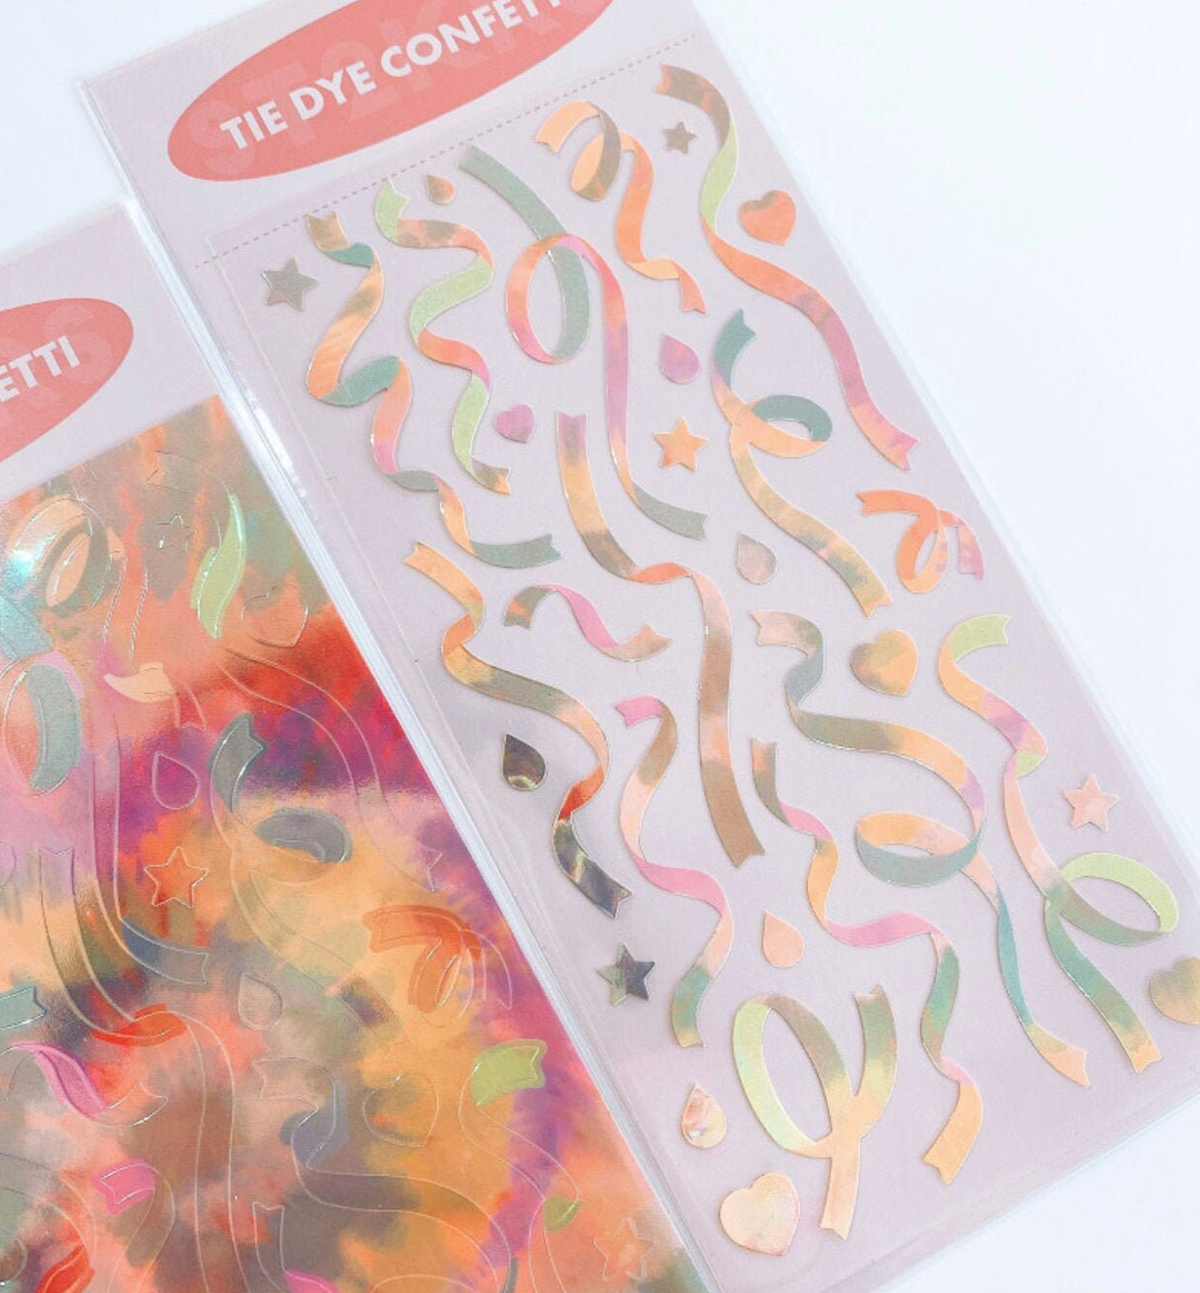 Warm Tie Dye Confetti Seal Sticker